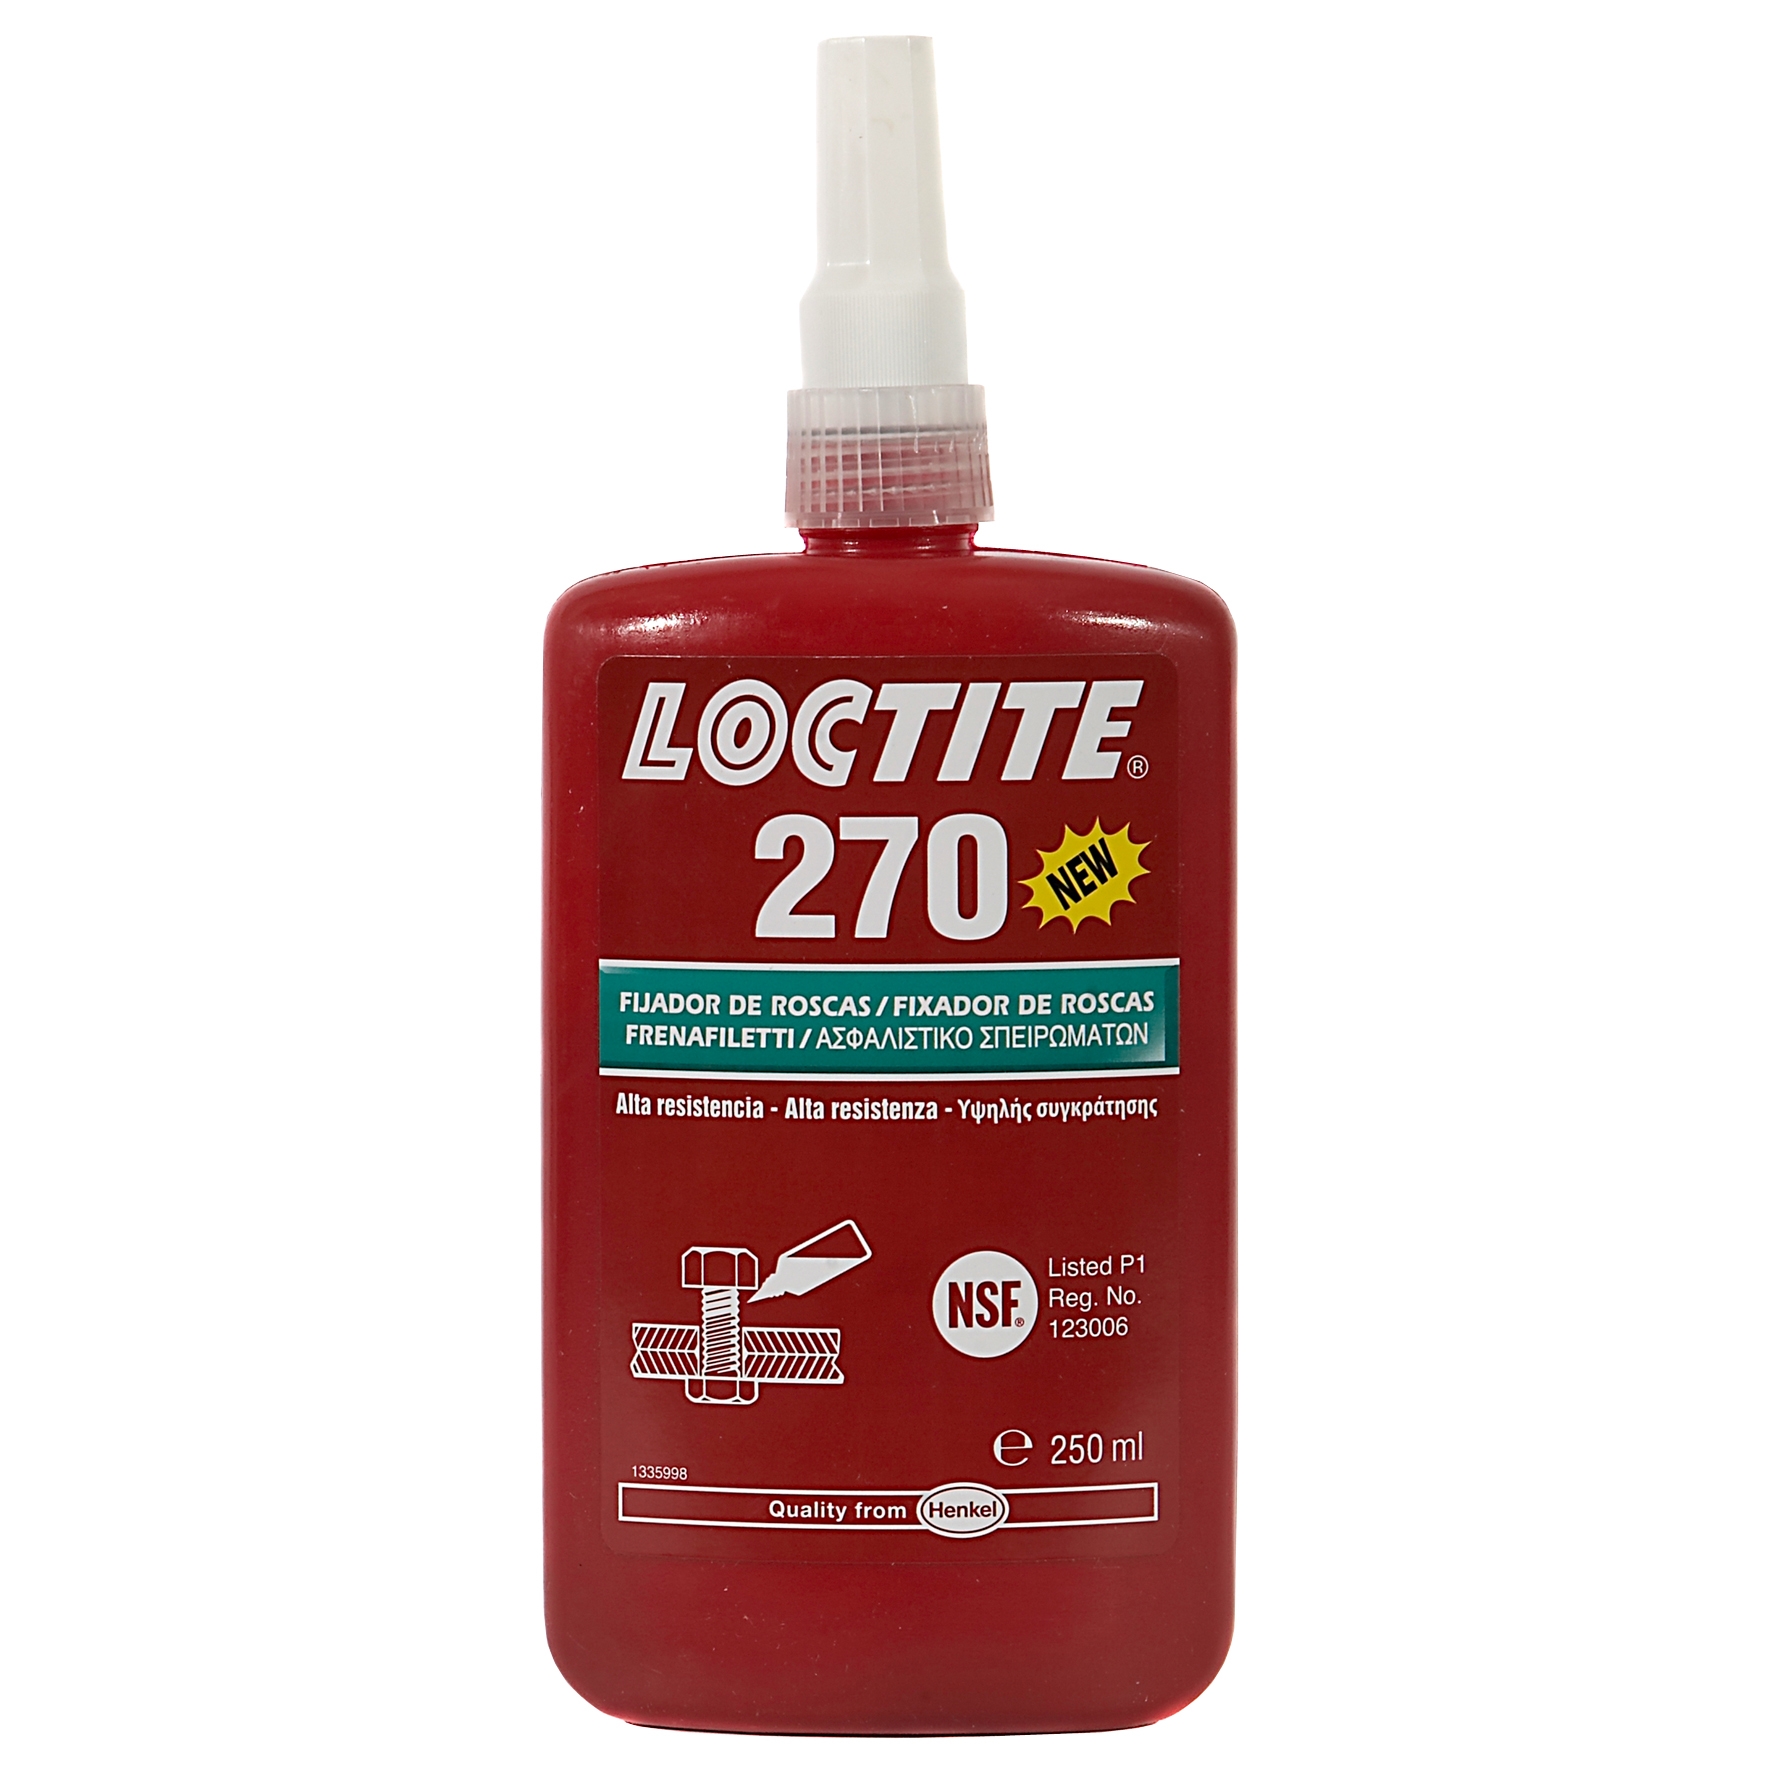 Loctite 270 Sicherung- u. Befestigung, 10 ml # 27016, stark